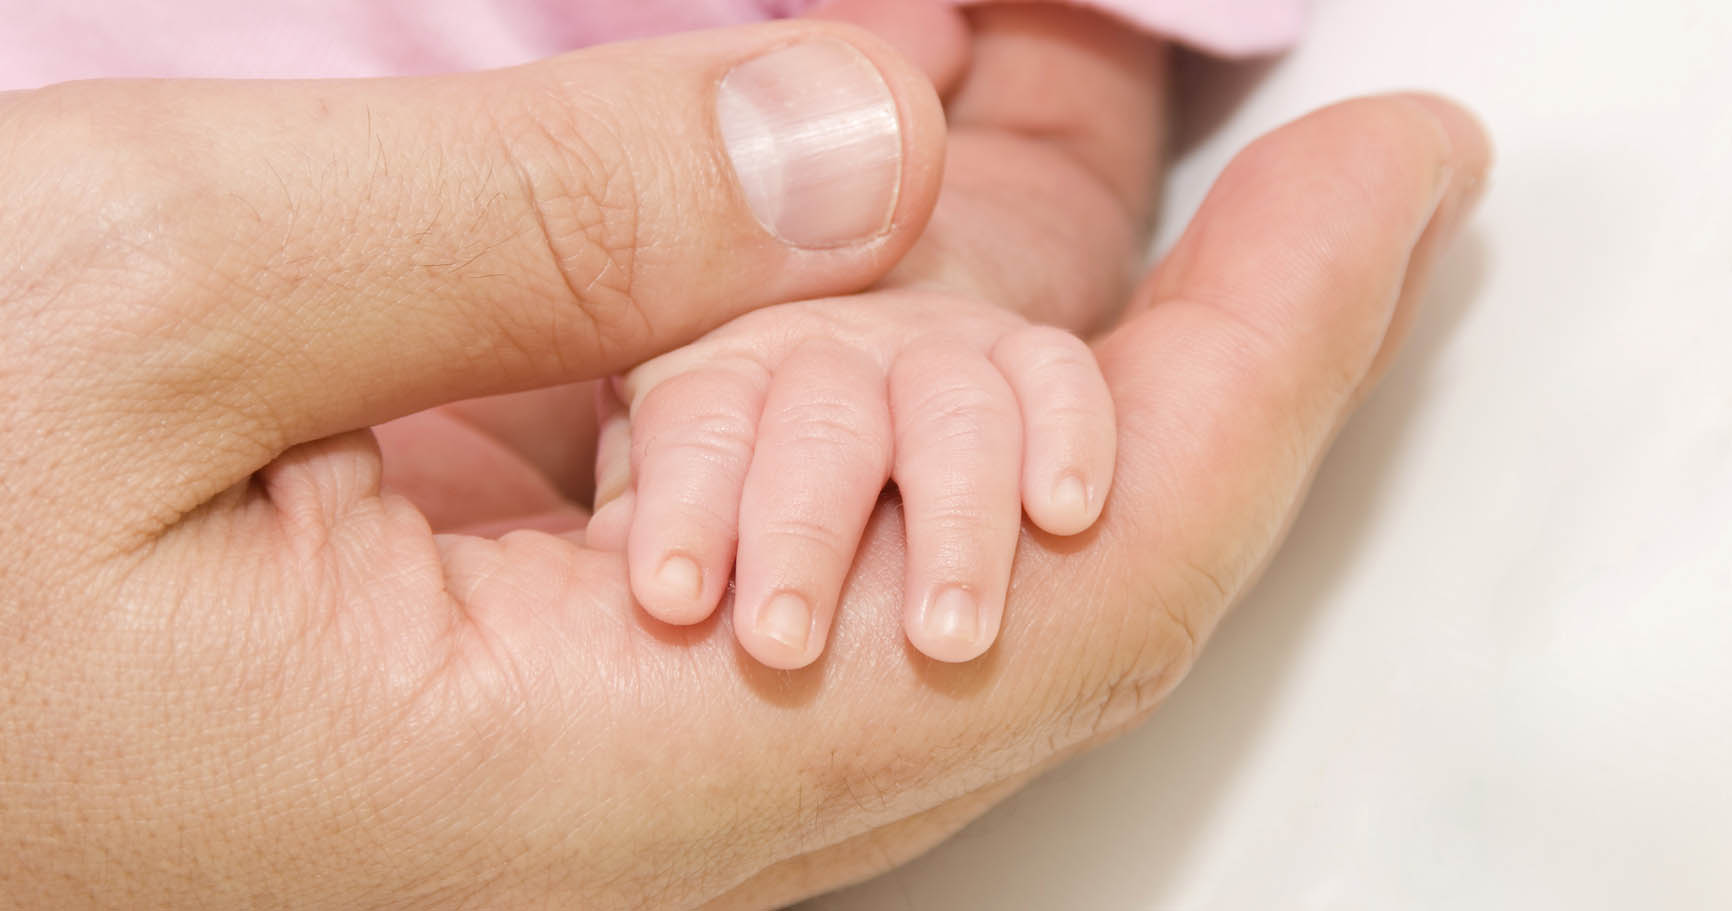 Este modelo se usa cuando los bebés son prematuros y pasan la mayor parte del tiempo en contacto directo con la piel de los padres